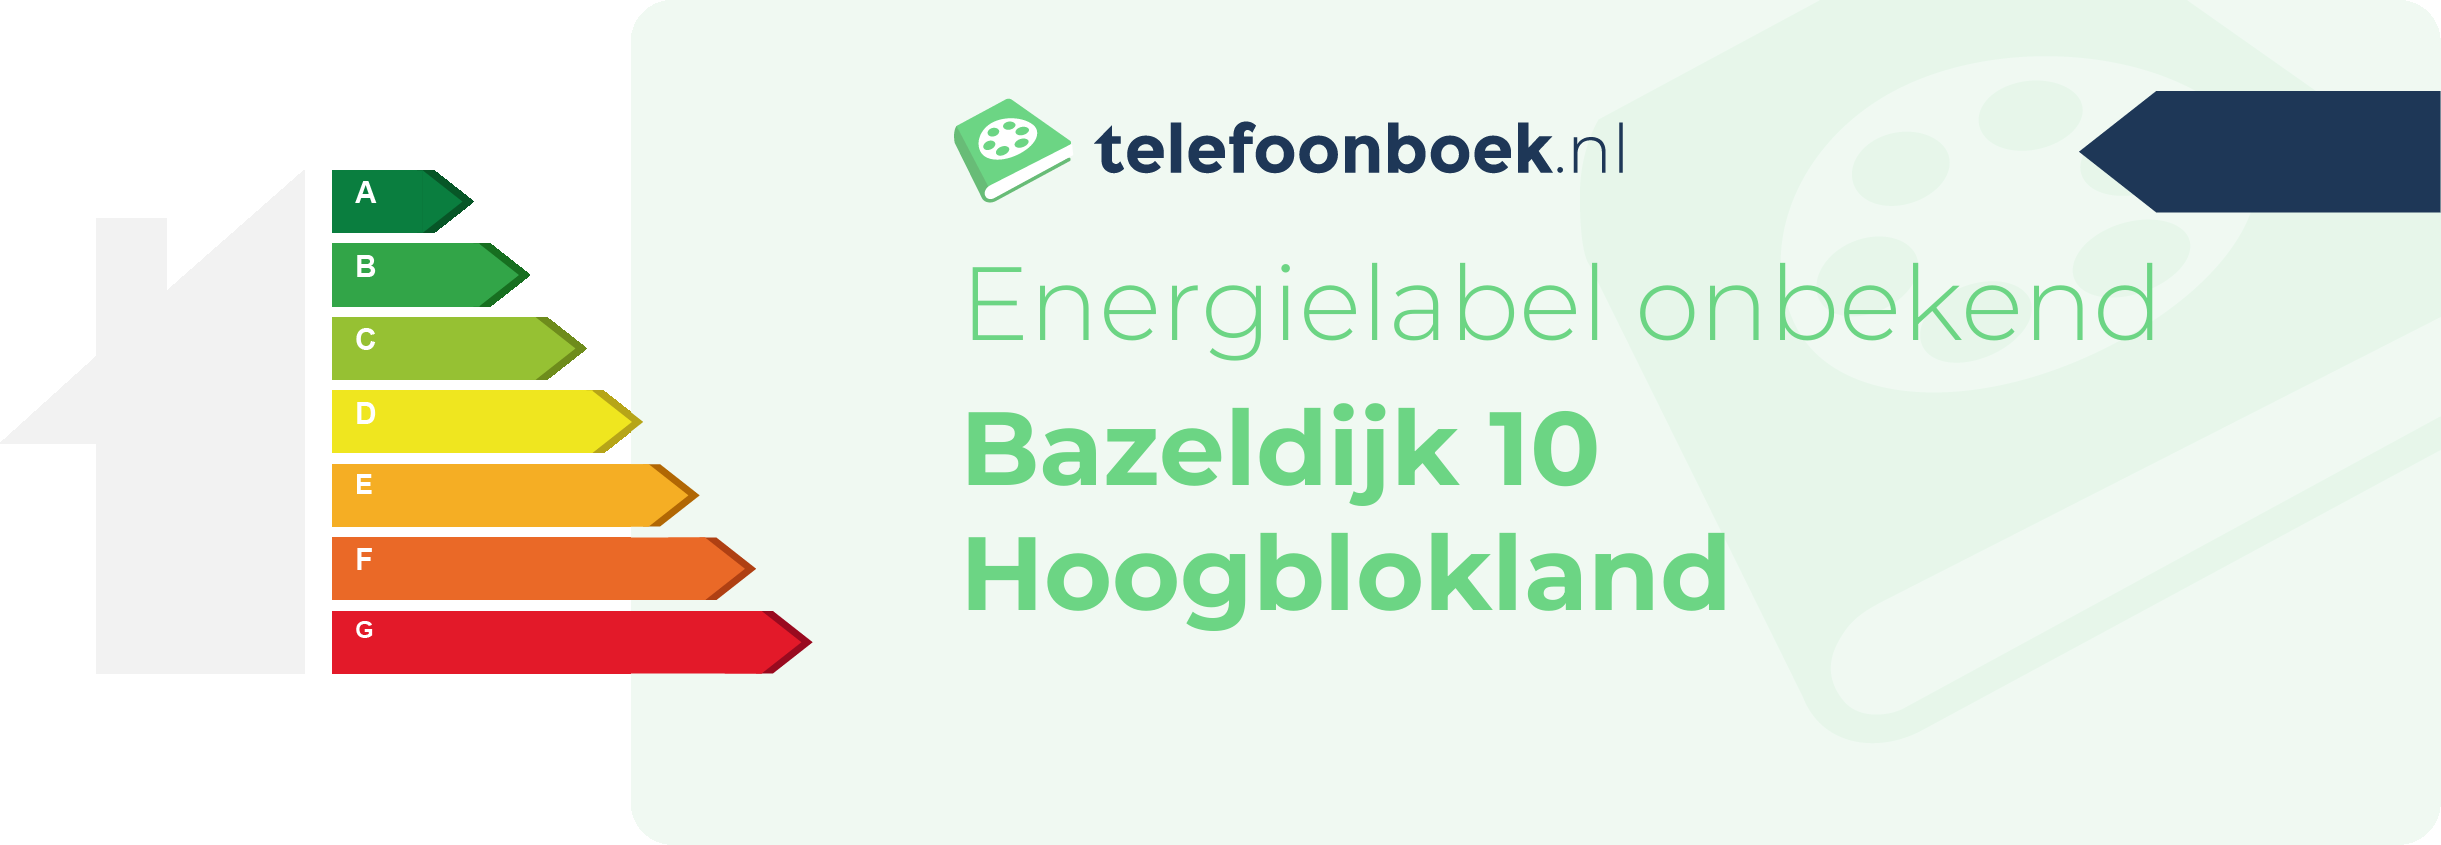 Energielabel Bazeldijk 10 Hoogblokland